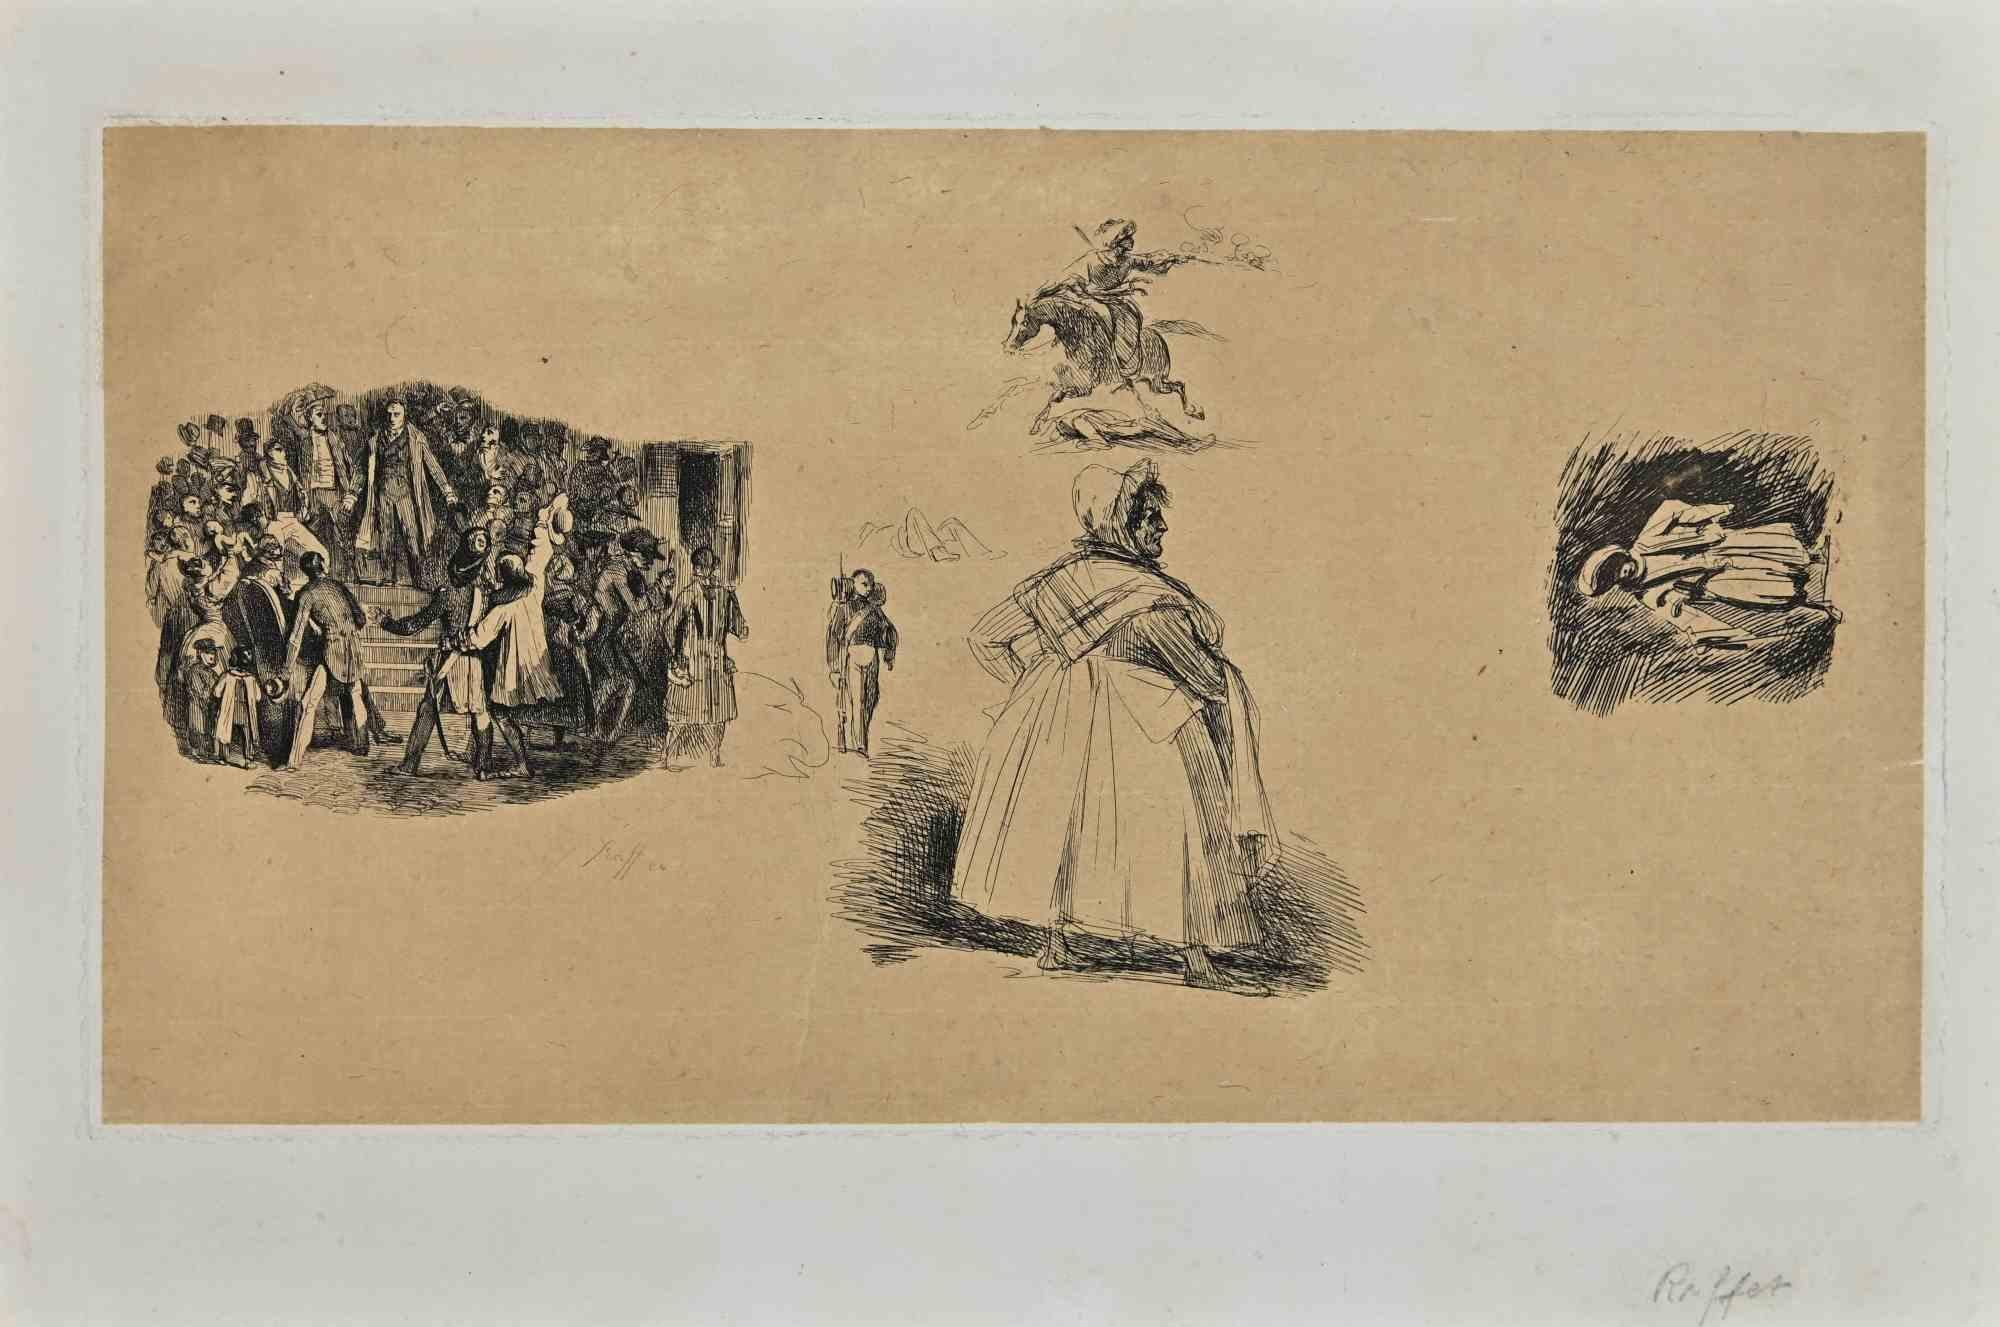 Portraits ist eine Original-Radierung von Auguste Raffet aus dem 19. Jahrhundert.

Signiert auf der Platte unten rechts.

Gute Bedingungen auf einem cremefarbenen Karton.

Denis Auguste Marie Raffet (1804 - 1860) war ein französischer Illustrator